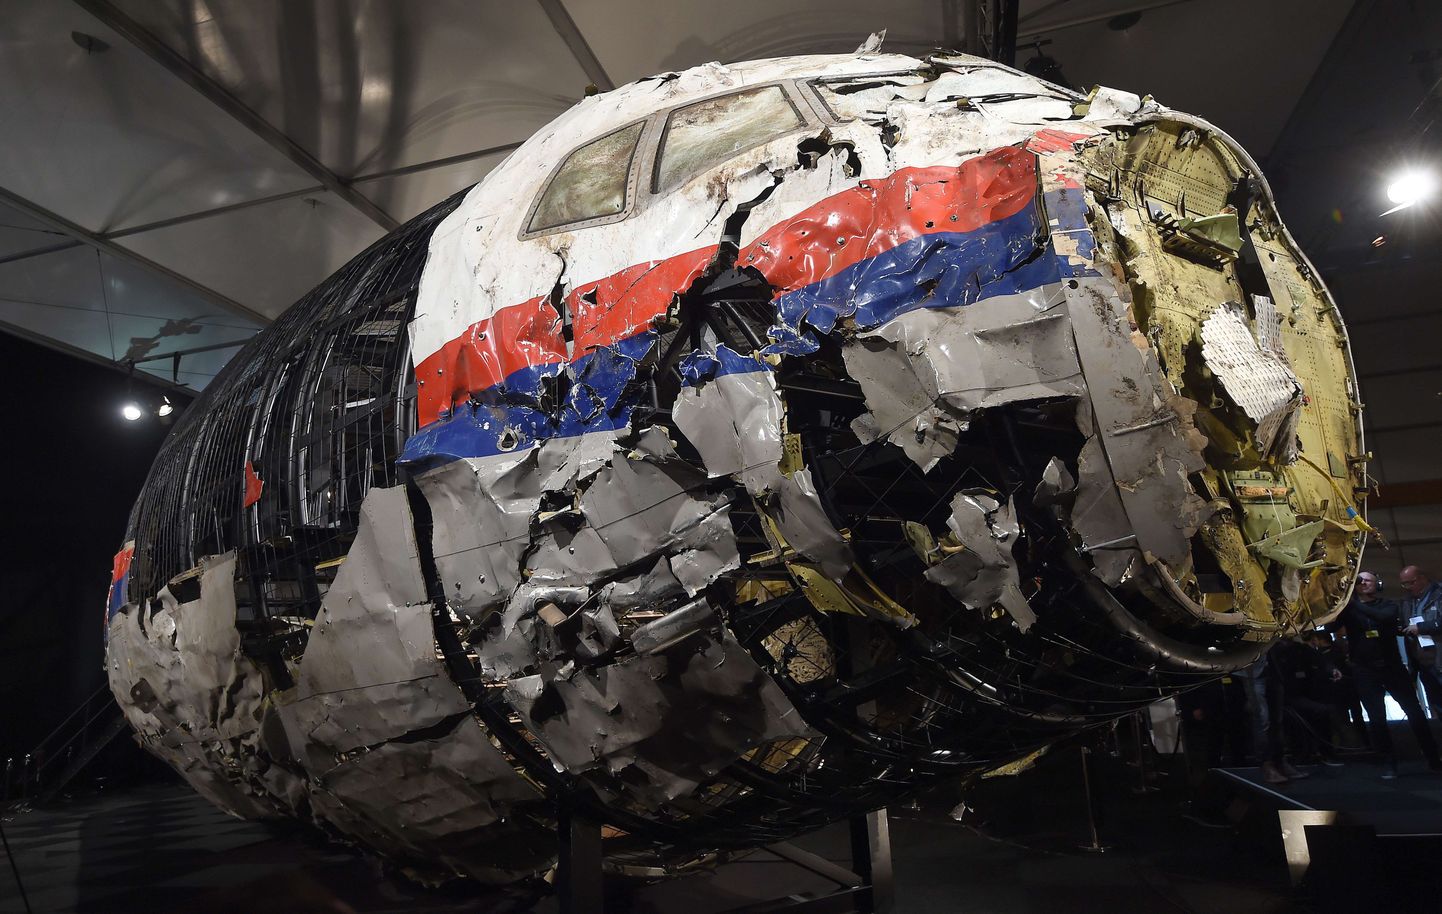 Malaysia Airlinesi Ida-Ukrainas alla kukkunud lennuki Boeing 777 jäänused